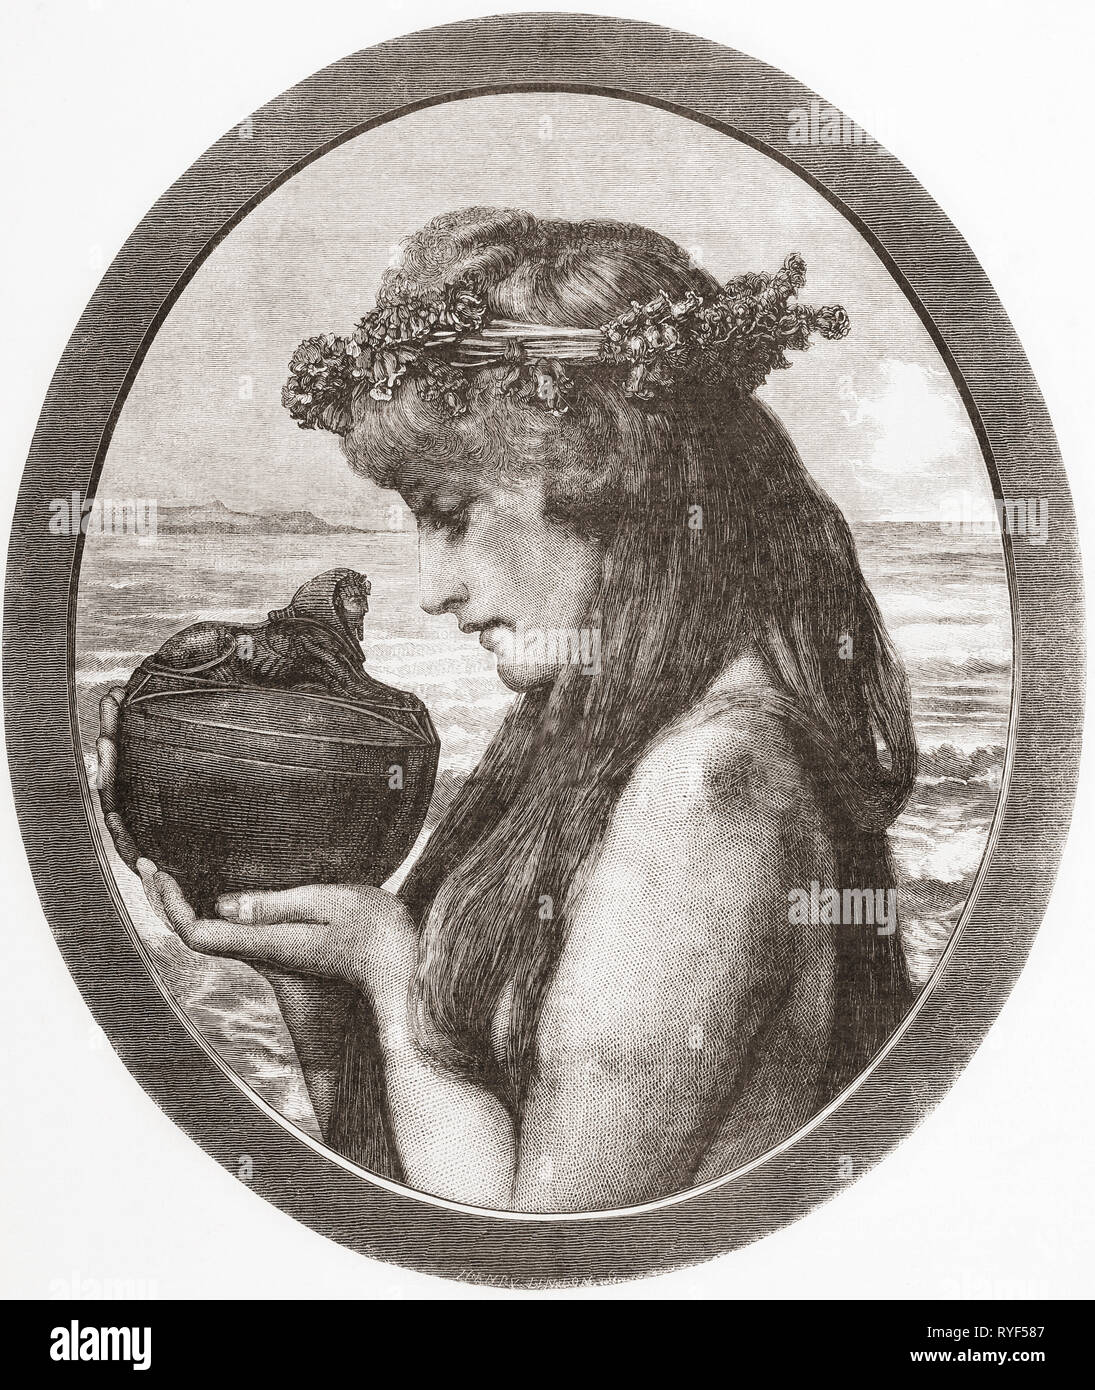 Pandora. Dans la mythologie grecque Pandora a ouvert un pot libérant ainsi tous les maux de l'humanité. À partir de la Ilustracion Artistica, publié 1887. Banque D'Images